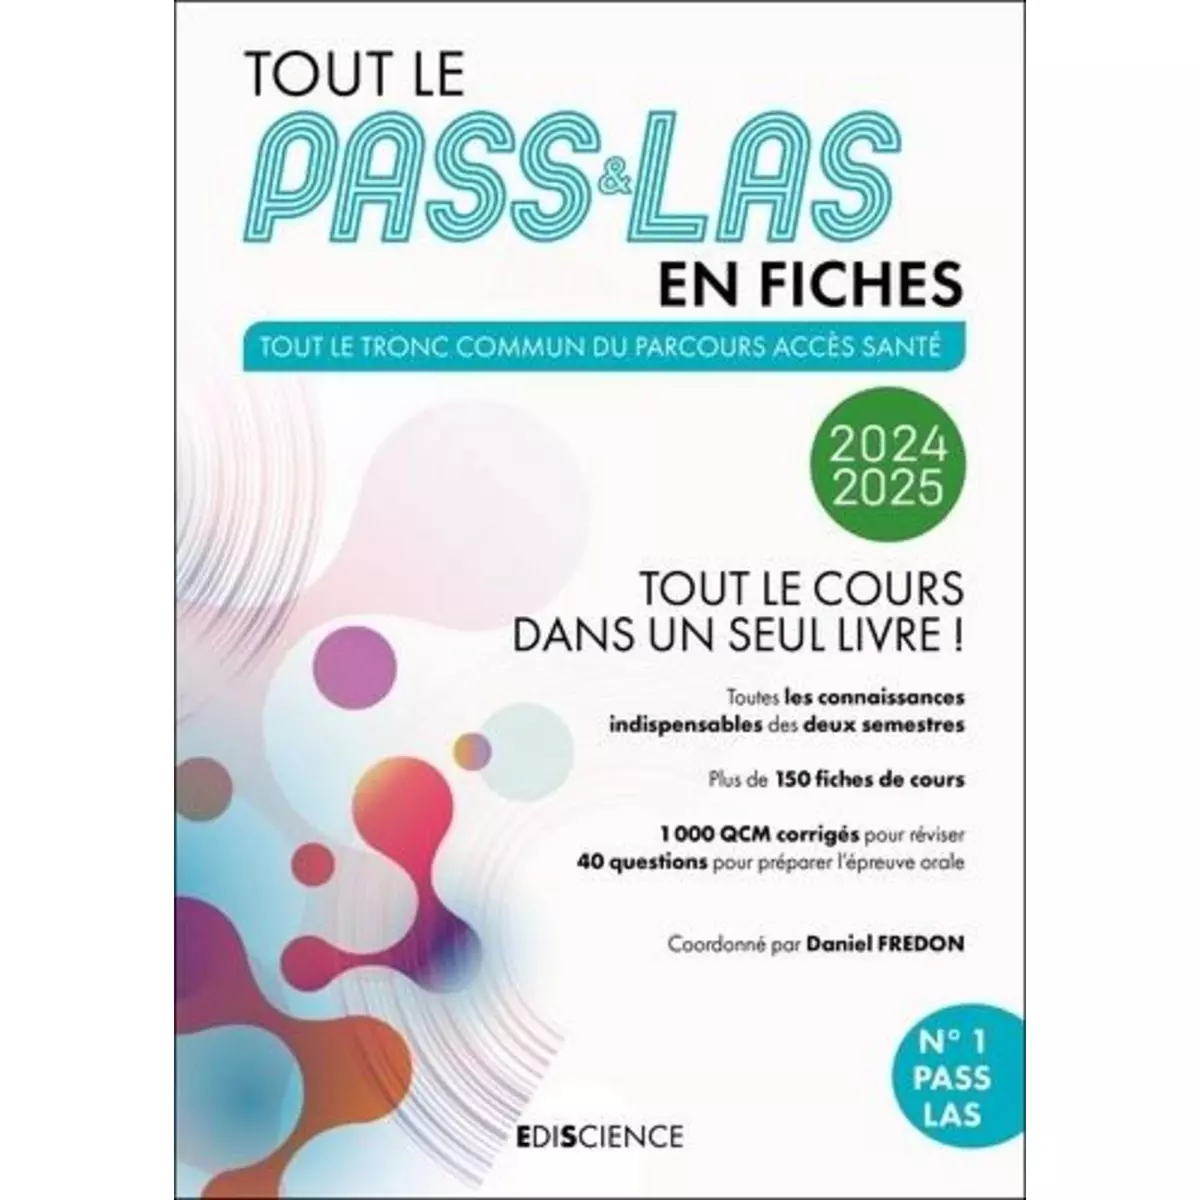  TOUT LE PASS & LAS EN FICHES. TOUT LE TRONC COMMUN DU PARCOURS ACCES SANTE, EDITION 2024-2025, Fredon Daniel